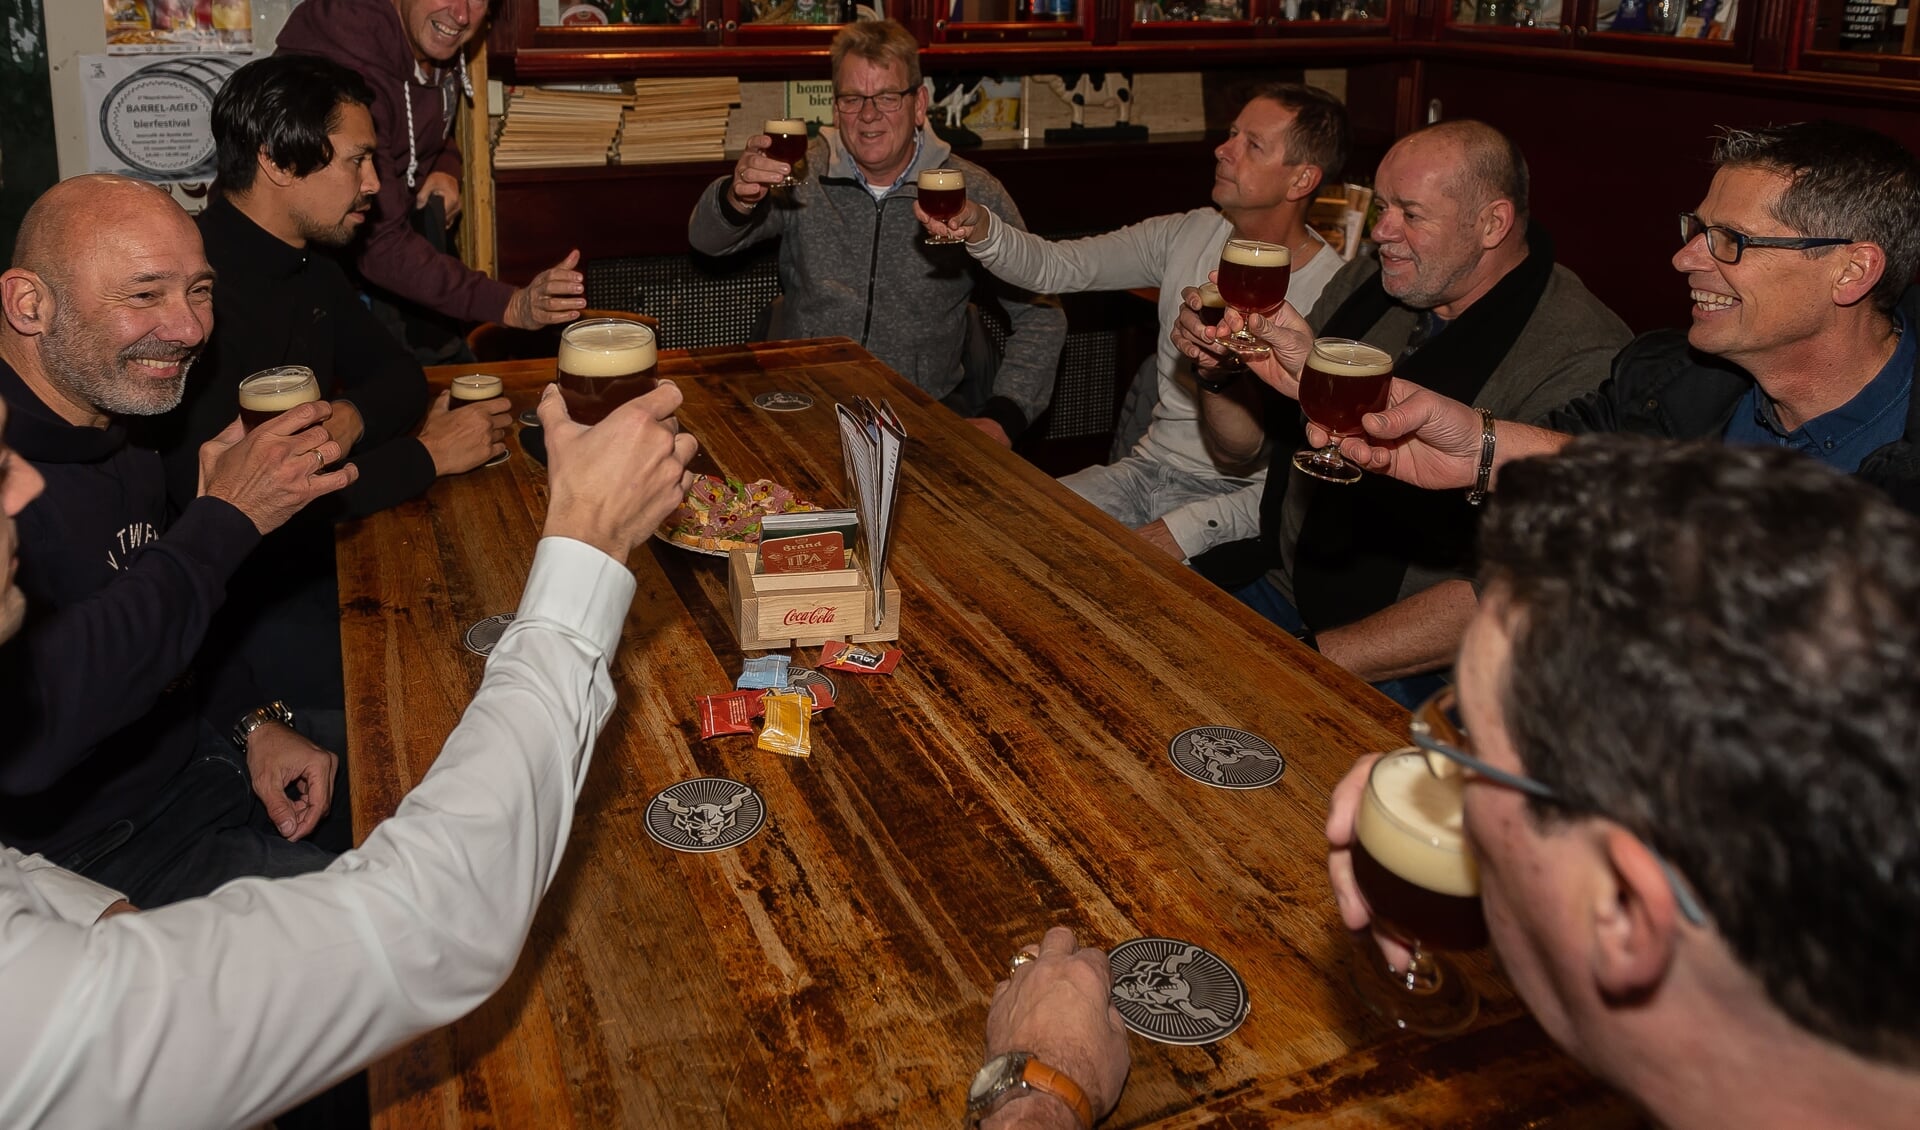 Op 24 november staat de 3e editie van het Barrel-Aged Bierfestival te gebeuren in De Bonte Koe.het 3